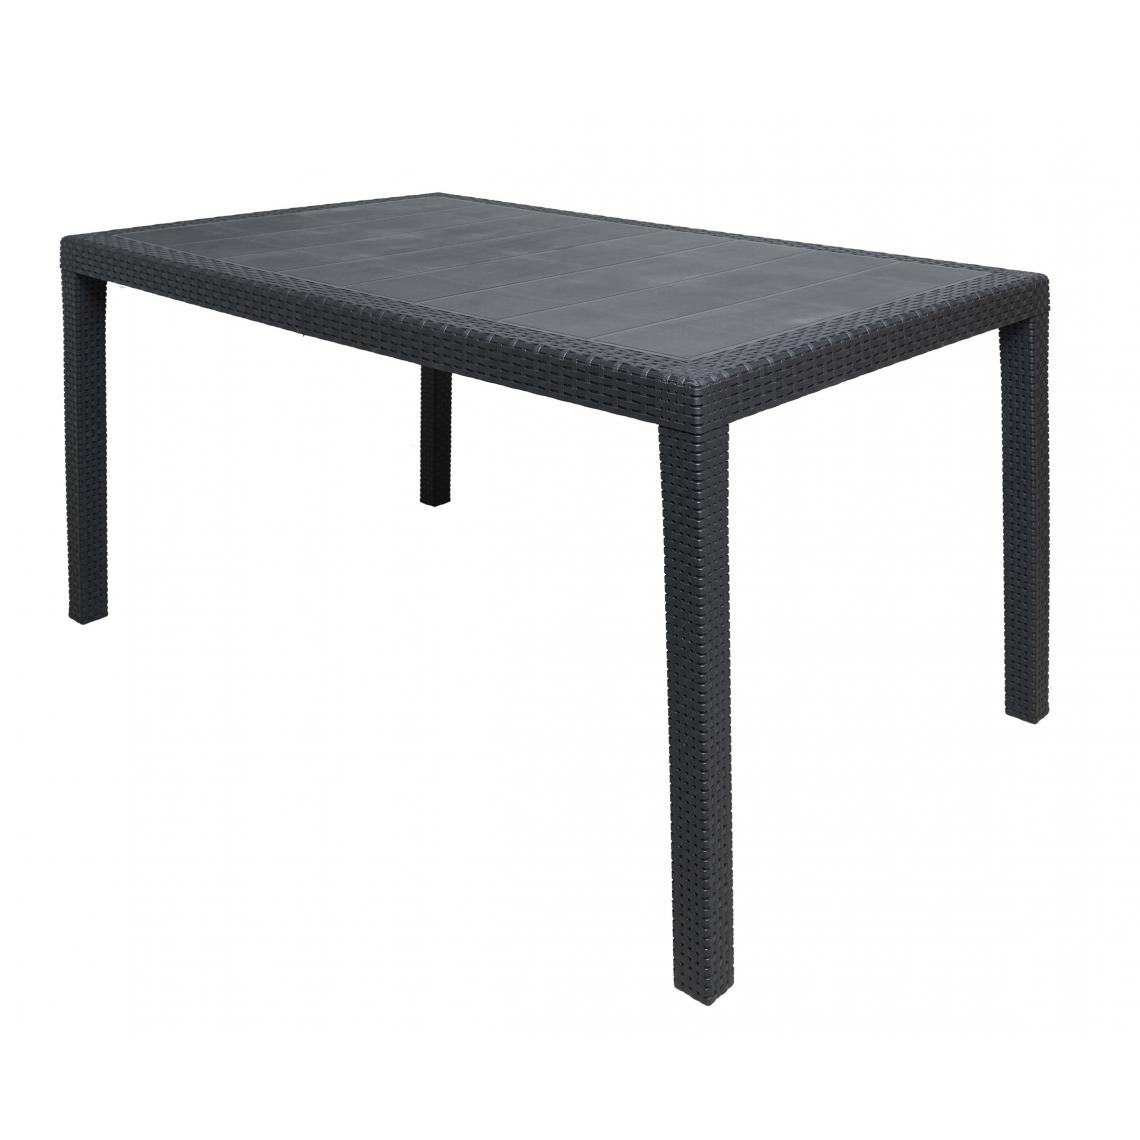 Alter - Table d'extérieur rectangulaire, Structure en résine dure effet rotin, Made in Italy, 150 x 90 x 72 cm, Couleur anthracite - Tables à manger